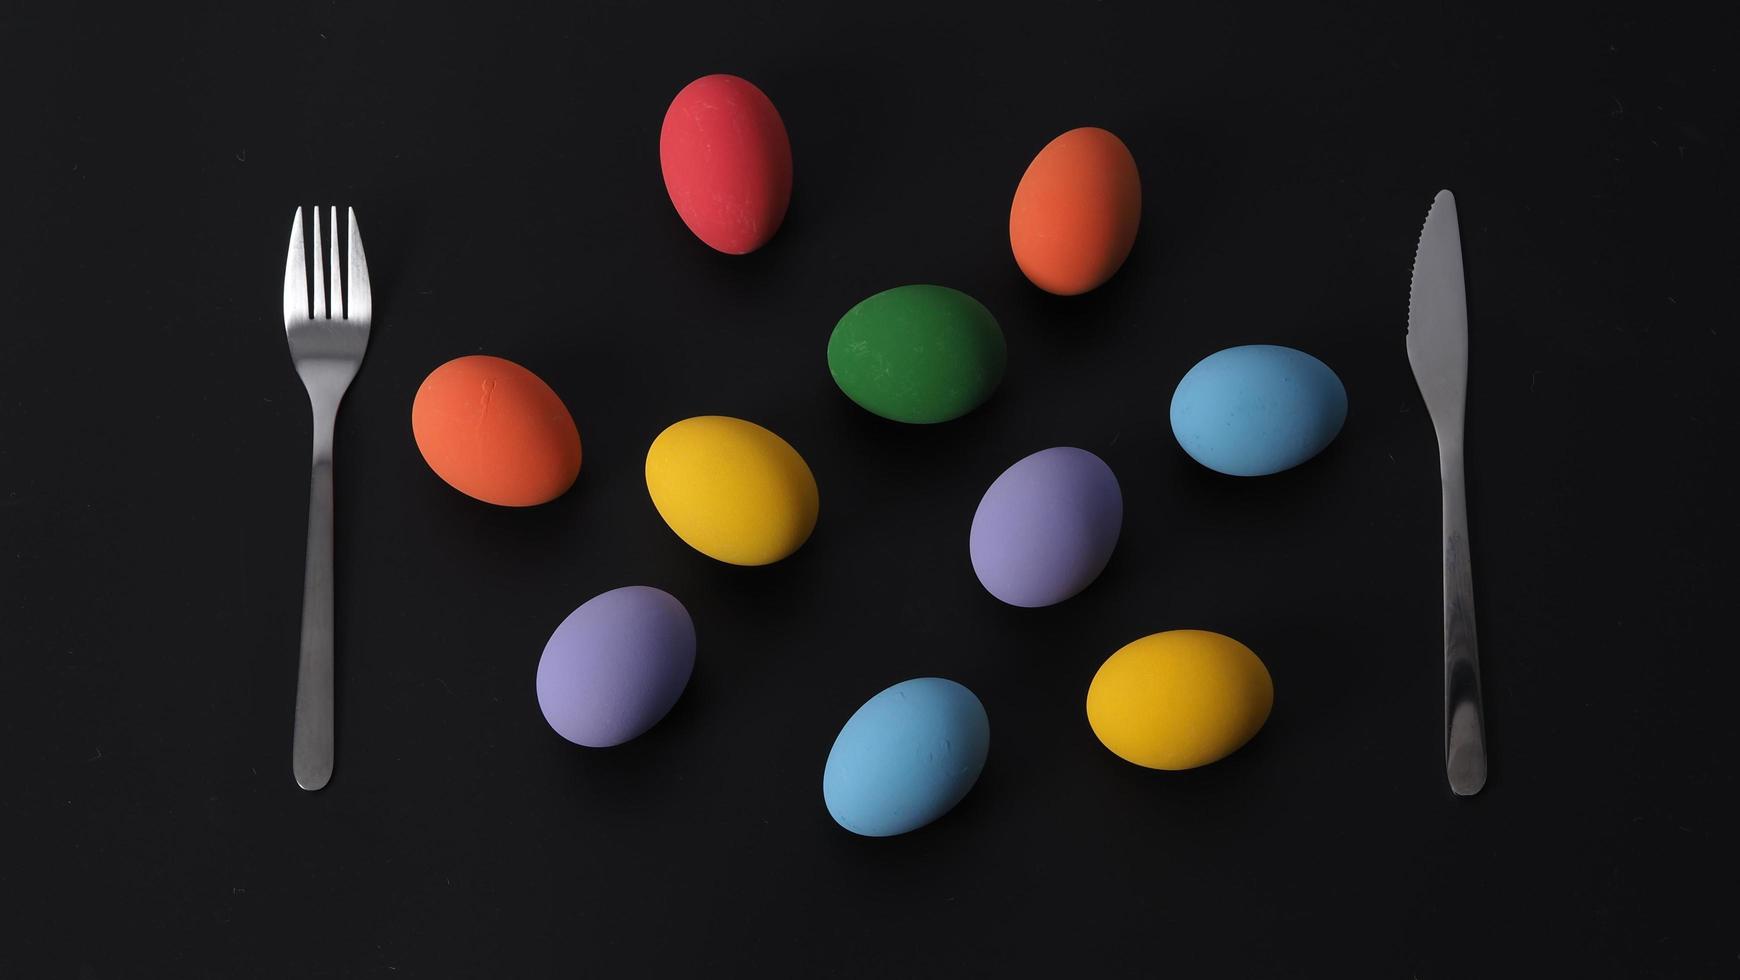 ovos de páscoa ou ovo de cor. multi-colorido de ovos de páscoa foto